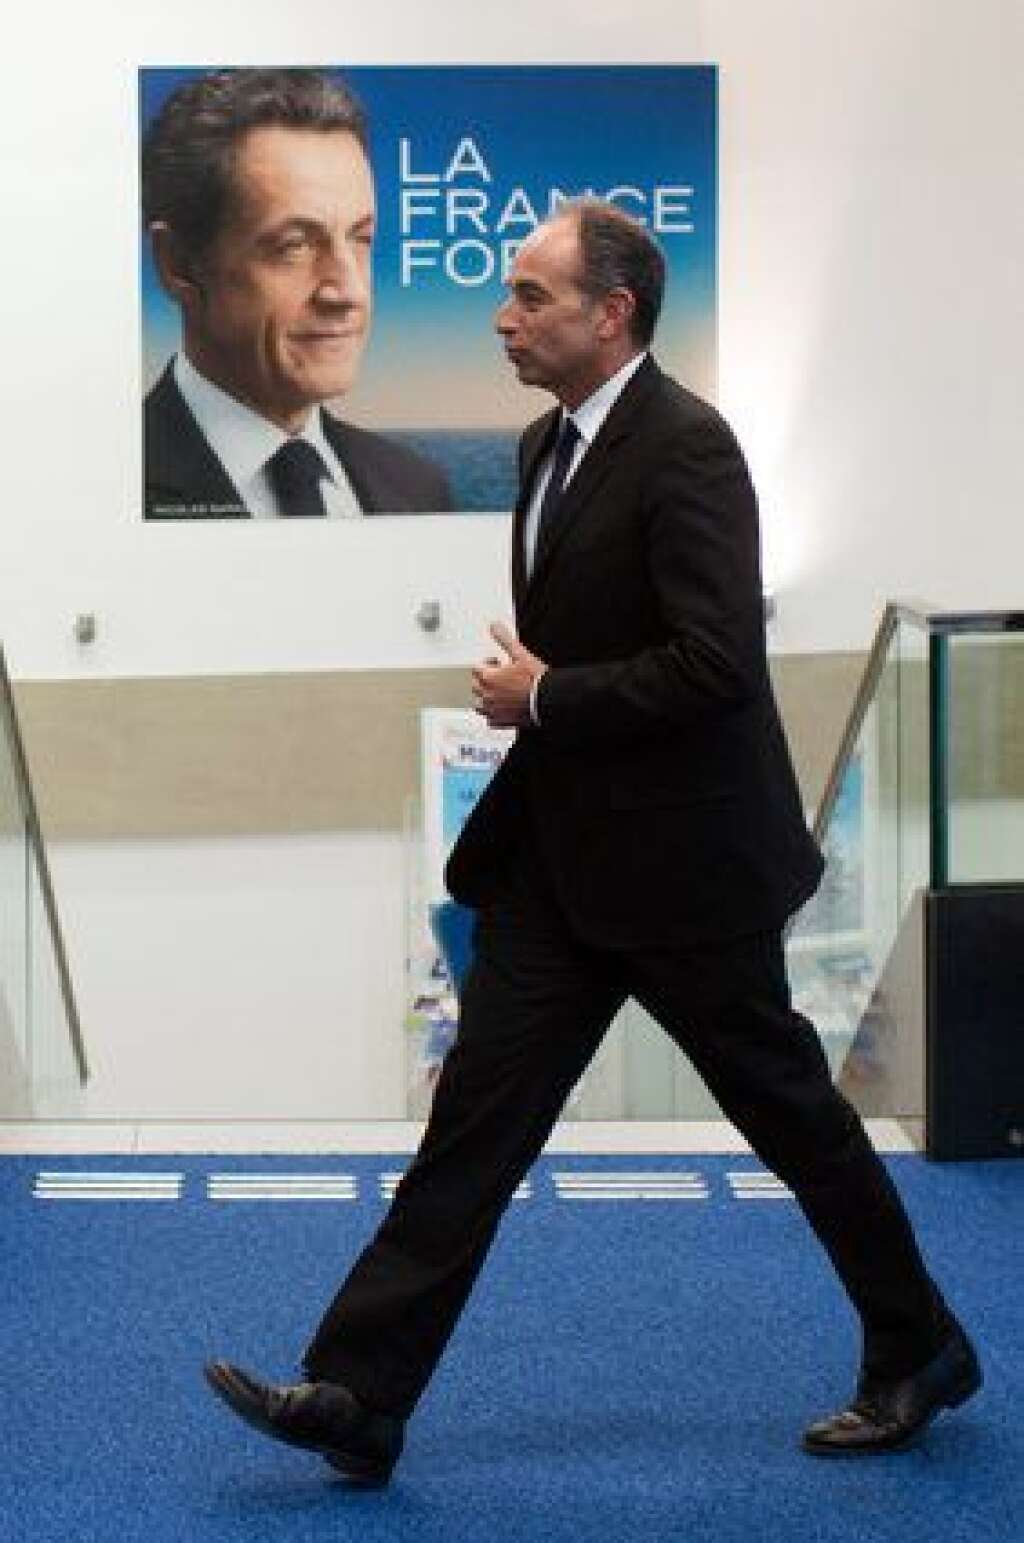 363.615 € de pénalités remboursées à la place de Sarkozy - Après l'nnvalidation de ses comptes de campagne, Nicolas Sarkozy  avait été condamné à verser au Trésor public 363.615 euros, soit le montant du dépassement du plafond des dépenses. Finalement, c'est l'UMP qui a réglé cette somme à sa place. La justice a ouvert une enquête pour abus de confiance.